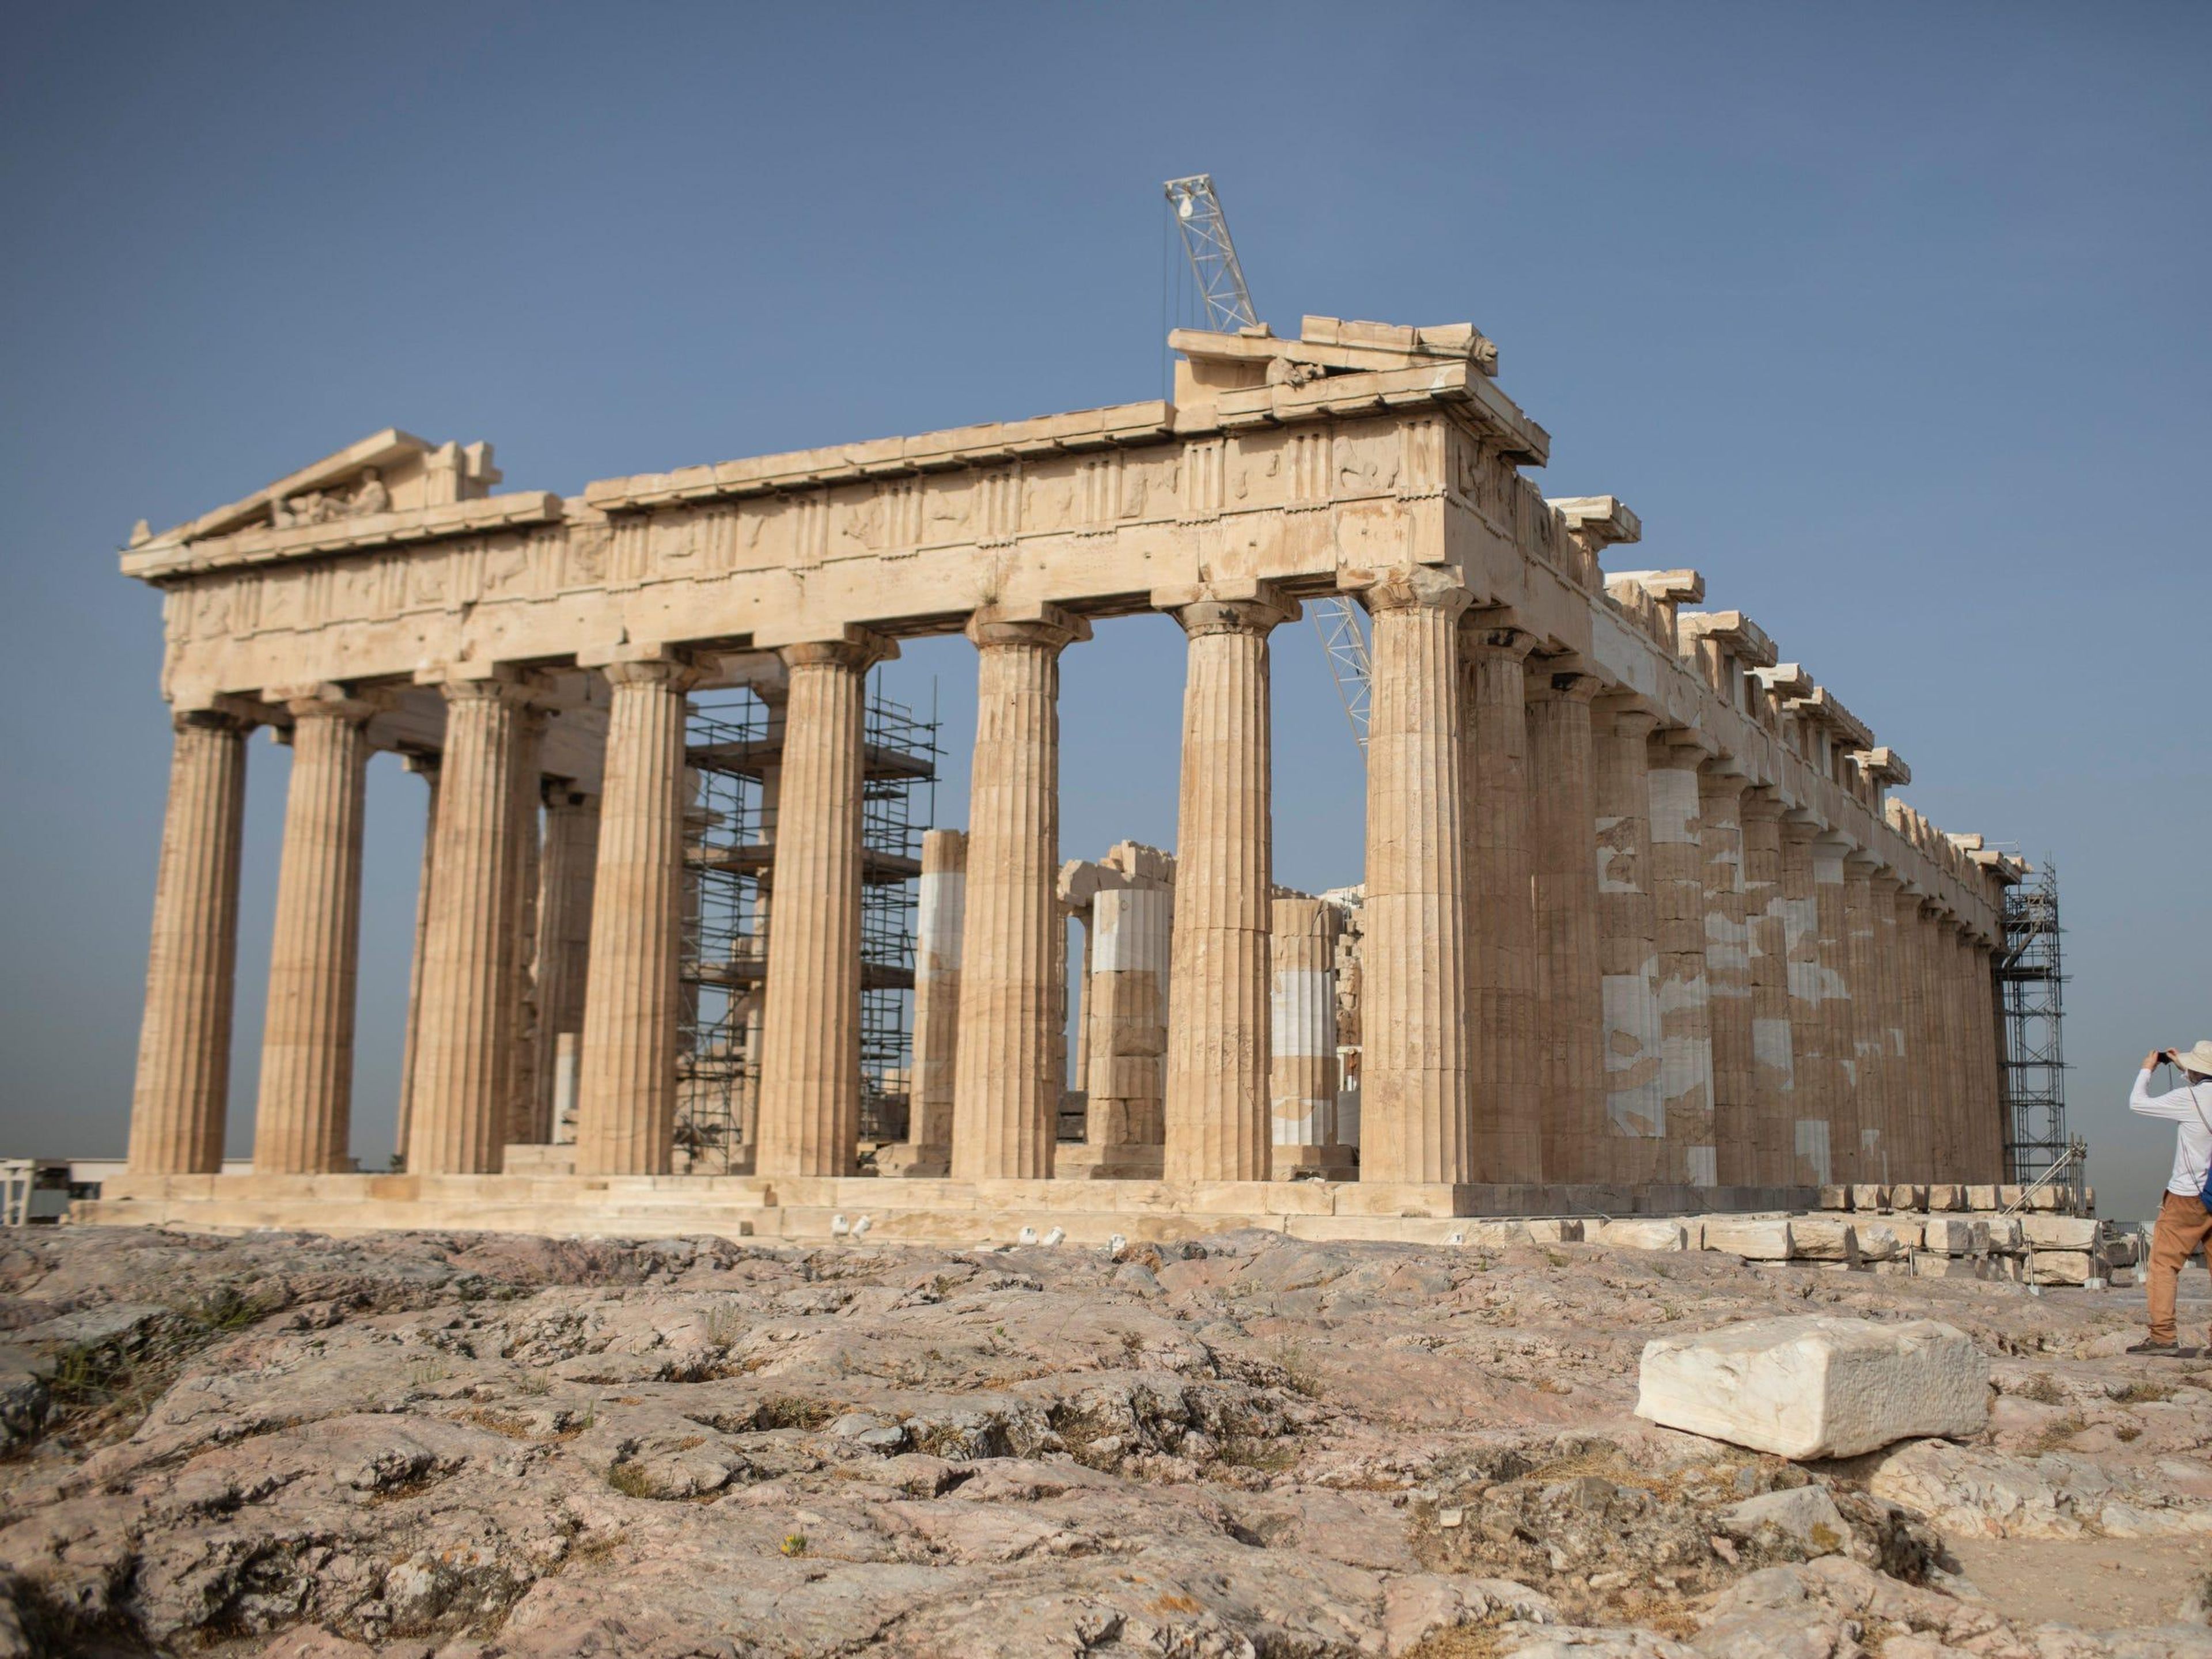 Mira estos GIFs que reconstruyen 7 ruinas antiguas históricas globales y muestran cómo se veían originalmente en toda su gloria.